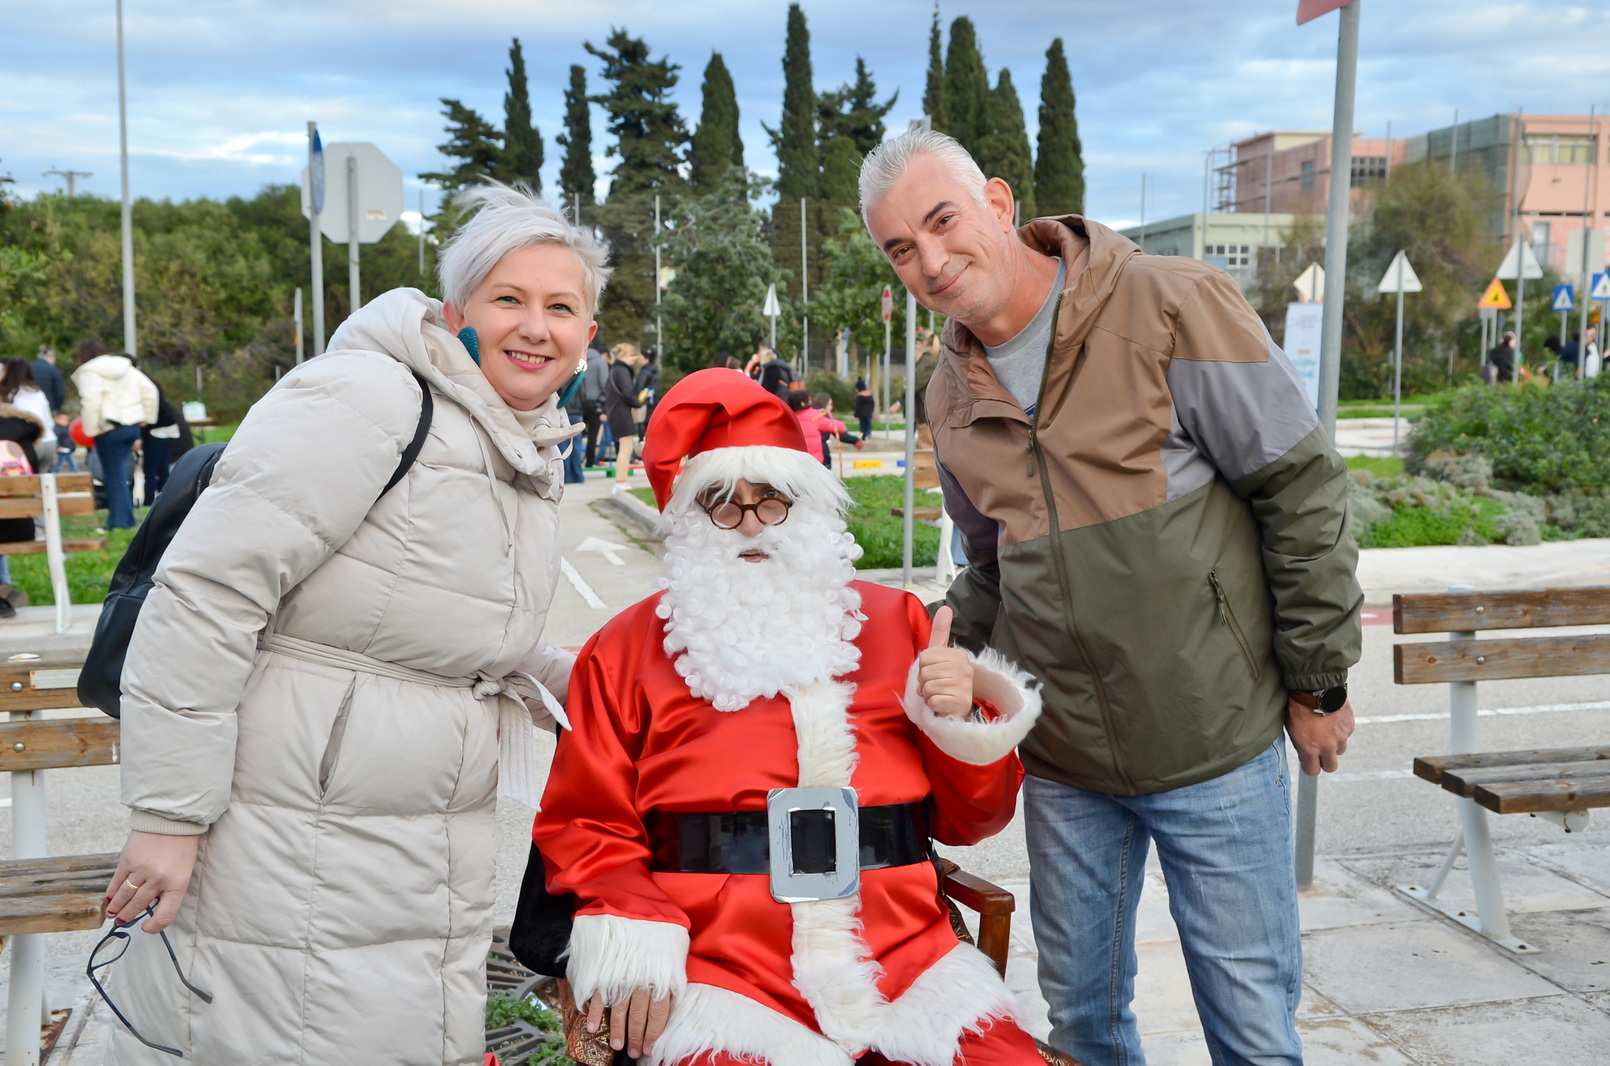 Πάτρα: Με μεγάλη επιτυχία το Χριστουγεννιάτικο διήμερο Παιδικό Φεστιβάλ στην Κανελλοπούλου - ΦΩΤΟ